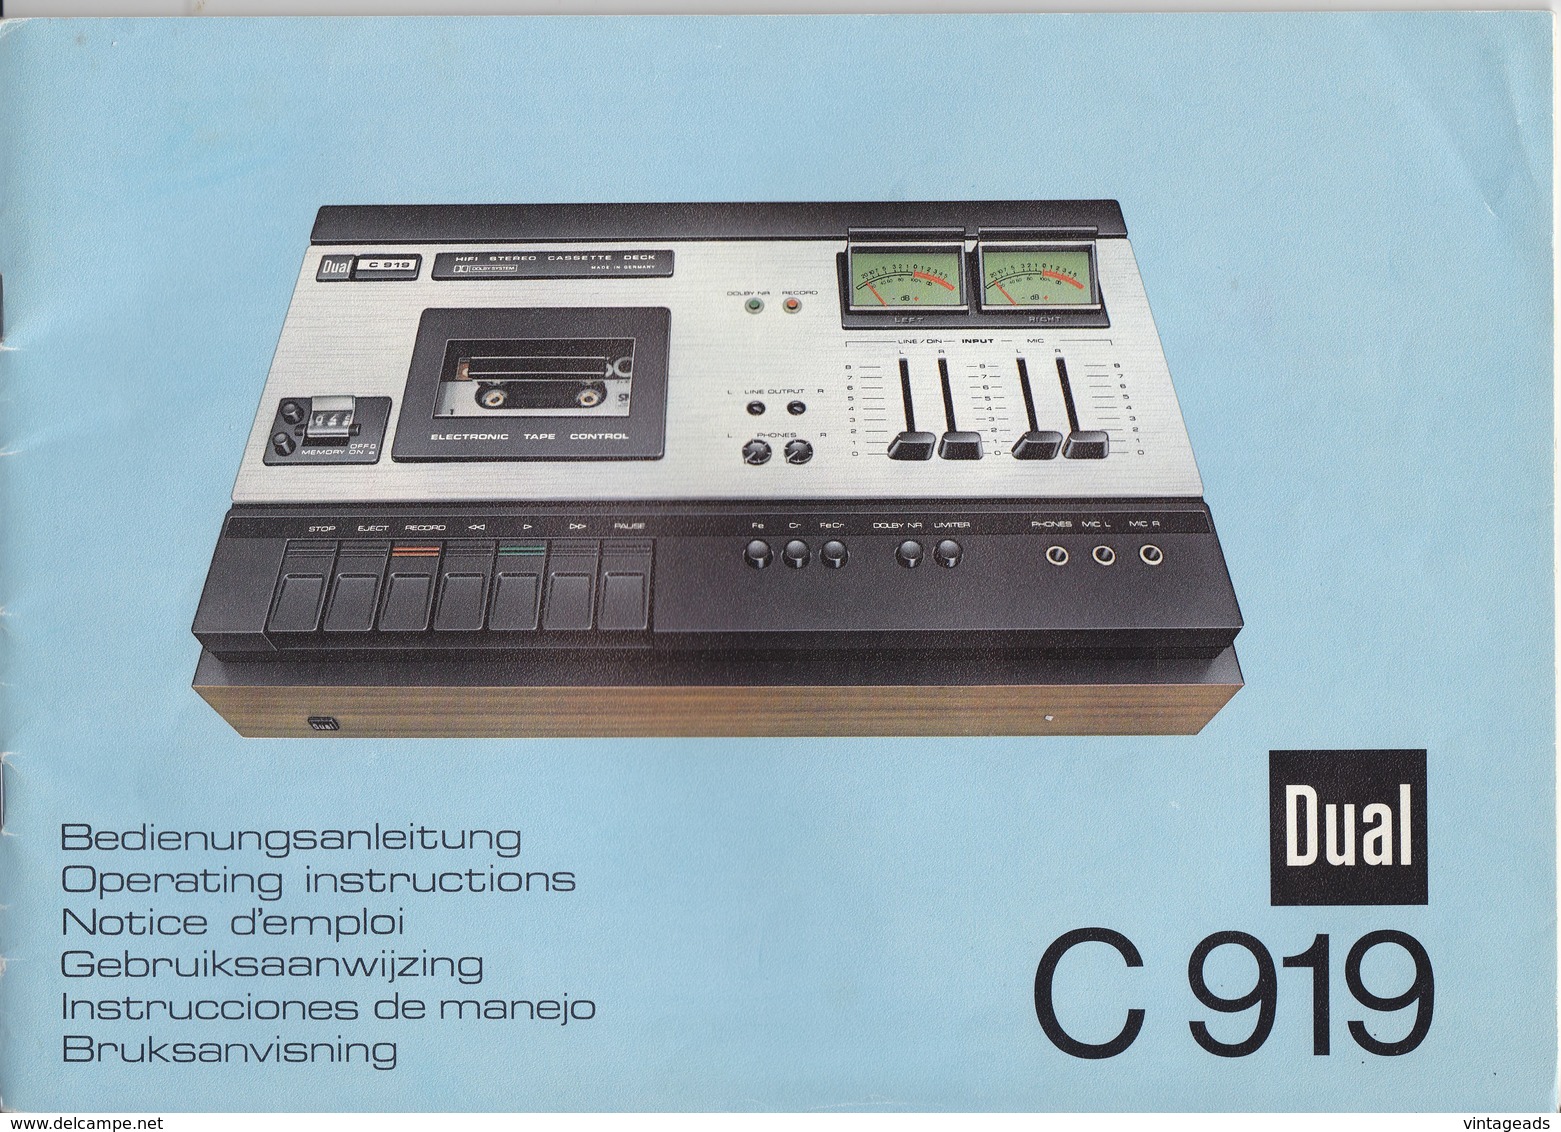 (AD387) Original Werbung Und Bedienungsanleitung DUAL C919 Kassettendeck, 1976 - Reparaturanleitungen